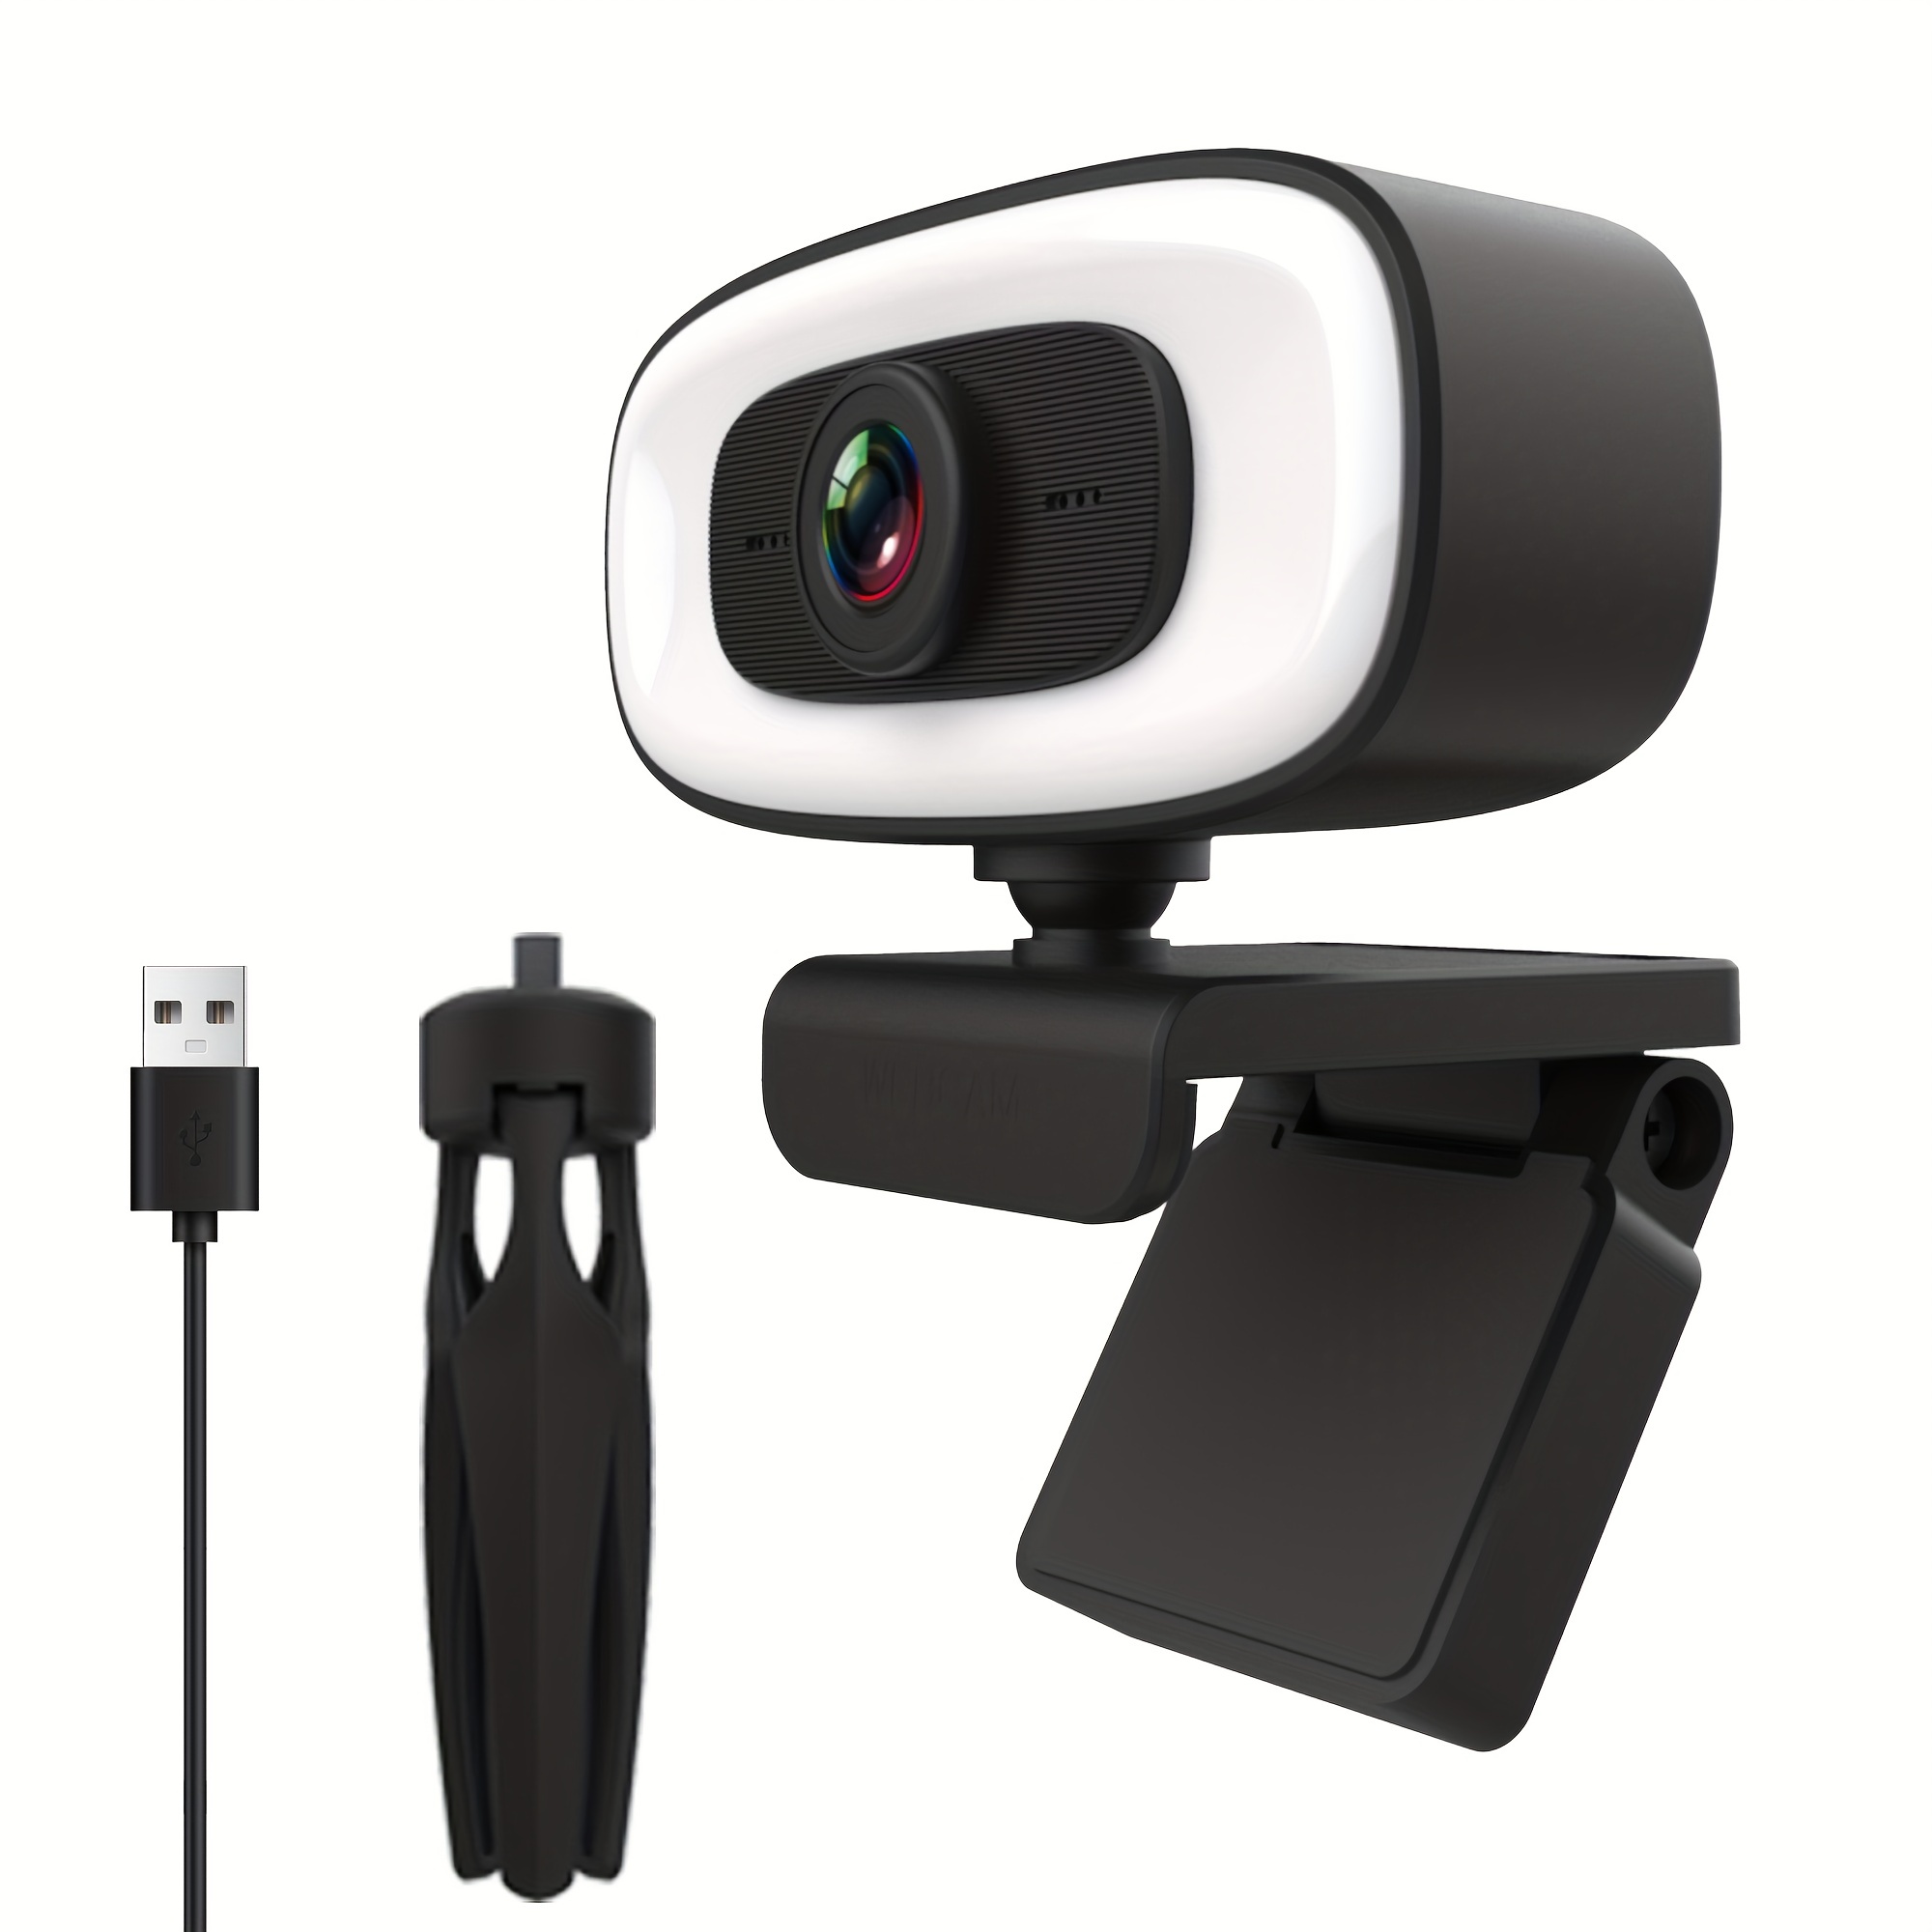 Generic - Caméra Web HD 1080p, webcam USB pour ordinateur PC avec  microphone, caméra vidéo Full HD pour ordinateur portable, écran large 110  degrés, webcam Pro Streaming pour enregistrement, appels, conférences, jeux  